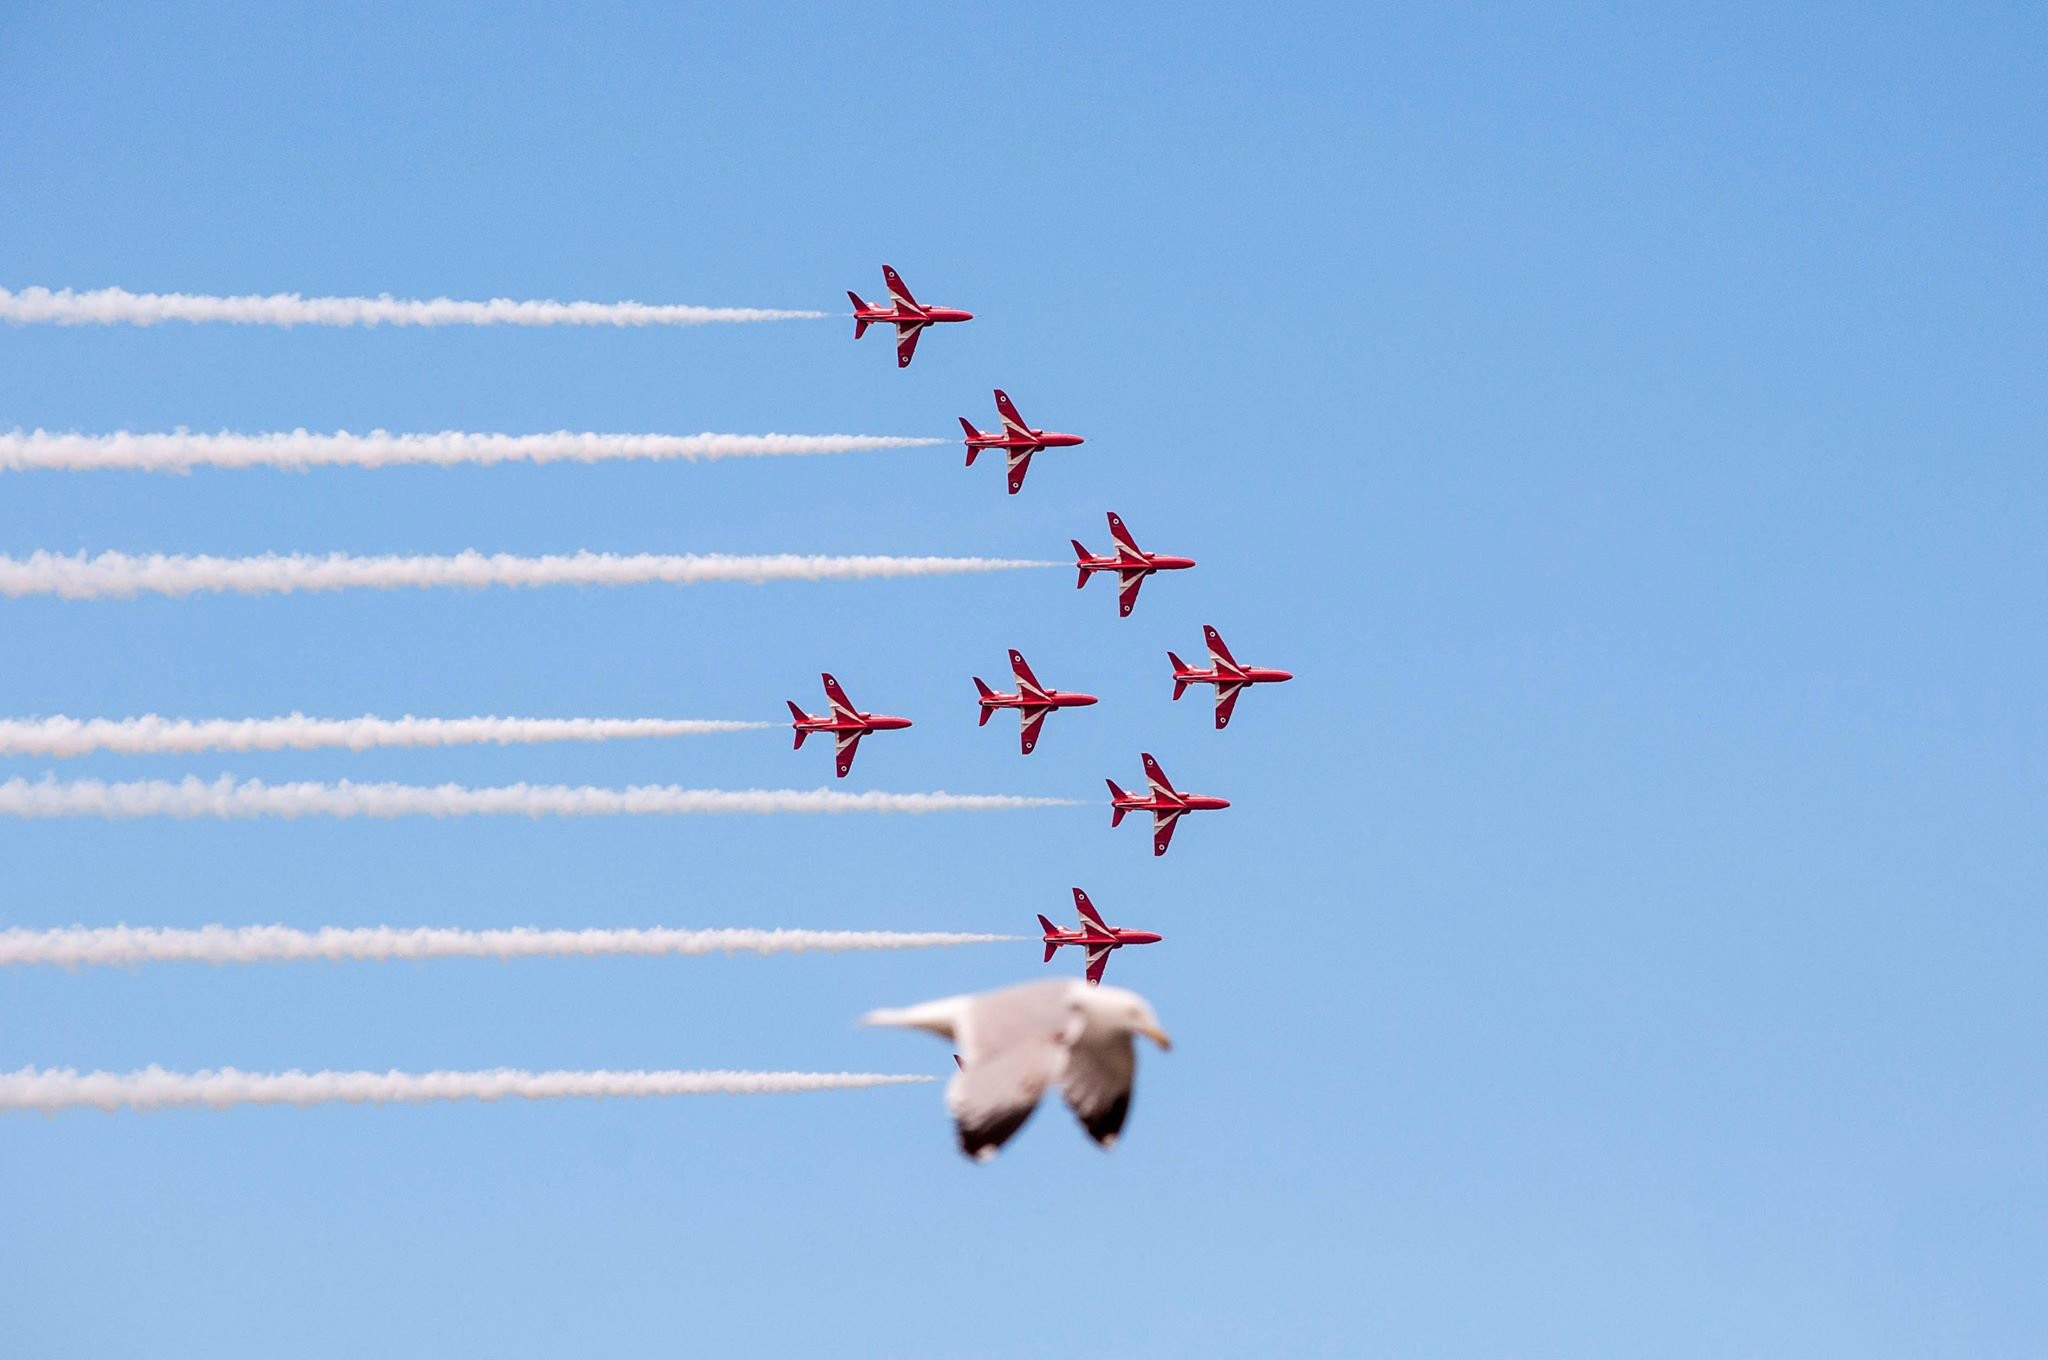 Чайка и «Красные стрелы» (пилотажная группа Королевских ВВС Великобритании). Фотограф Джейд Коксон